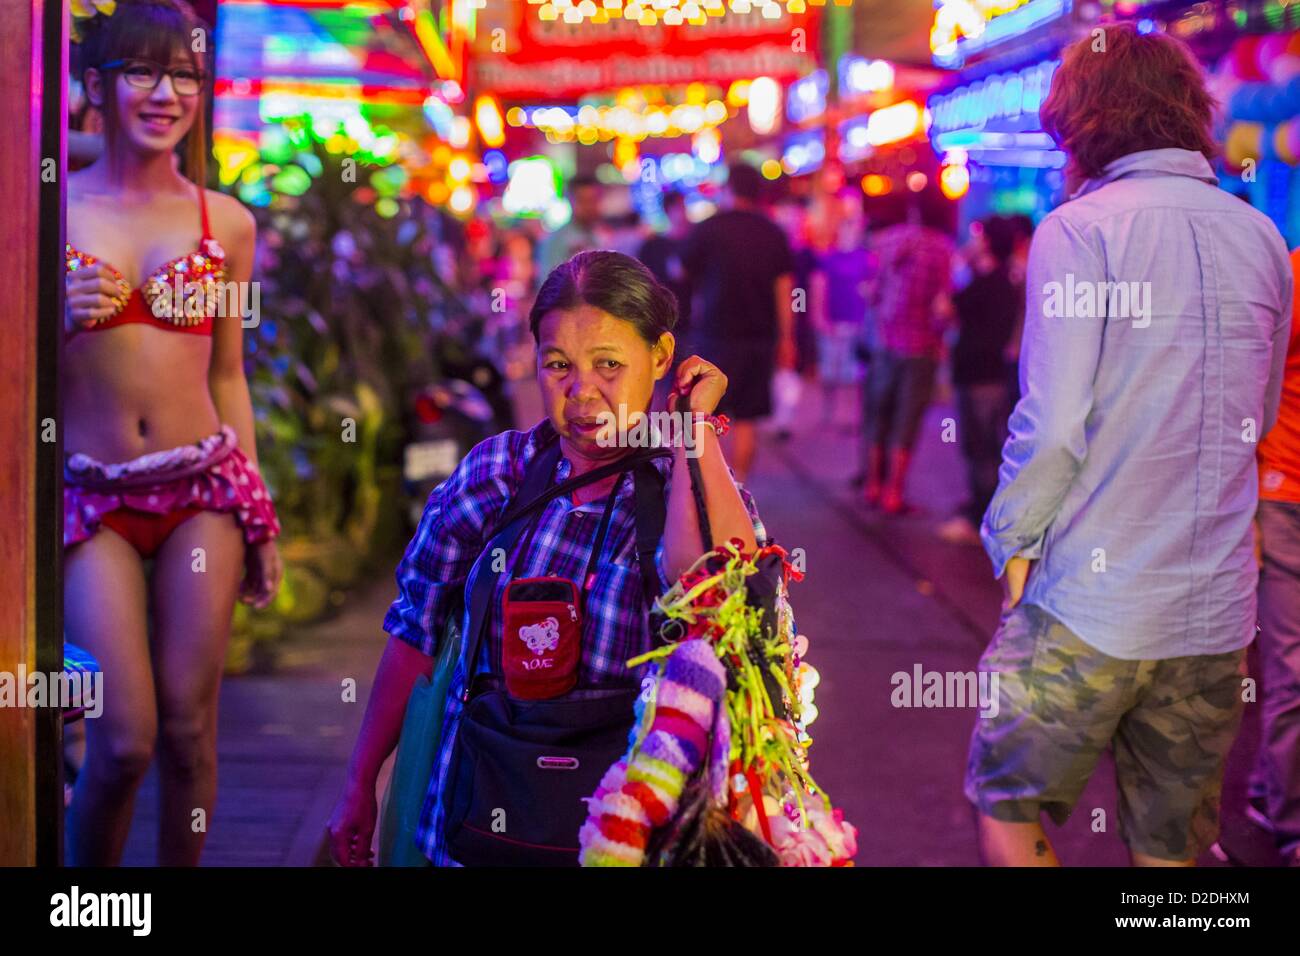 Enero 12, 2013 - Bangkok, Tailandia - una mujer que vende ligueros a trabajadores en el distrito rojo de Soi Cowboy camina por la calle entre ''Ladyboy" artistas y turistas. En Tailandia, los ladyboys son llamados kathoey. Muchos trabajan en la industria del entretenimiento y la vida nocturna de los sectores de la economía tailandesa. La prostitución es ilegal en Tailandia, aunque en la práctica es tolerada y parcialmente regulado. La prostitución se practica abiertamente en todo el país. El número de prostitutas es difícil de determinar, las estimaciones varían ampliamente. Desde la Guerra de Vietnam, Tailandia ha adquirido notoriedad internacional amon Foto de stock